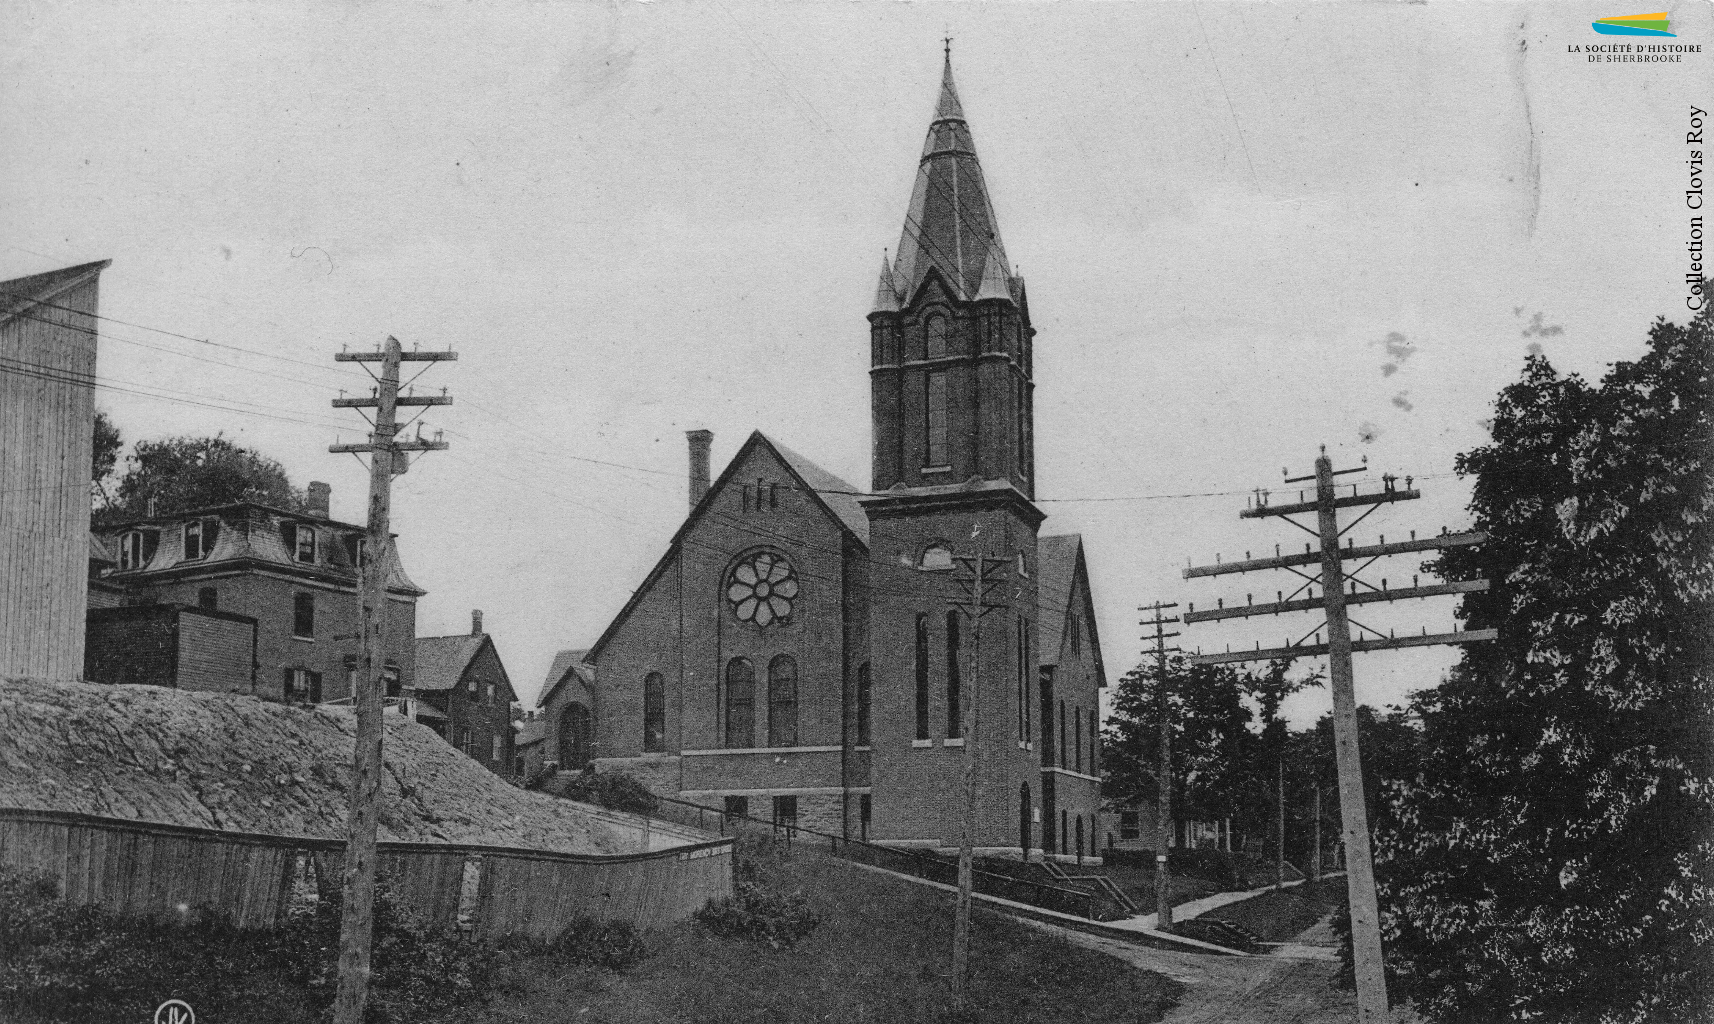 L’église presbytérienne écossaise St. Andrew’s, située au coin des rues Frontenac et Peel, vers 1905. Construite en 1888, elle est démolie en 2000 après avoir été très endommagée par un ouragan en 1999.